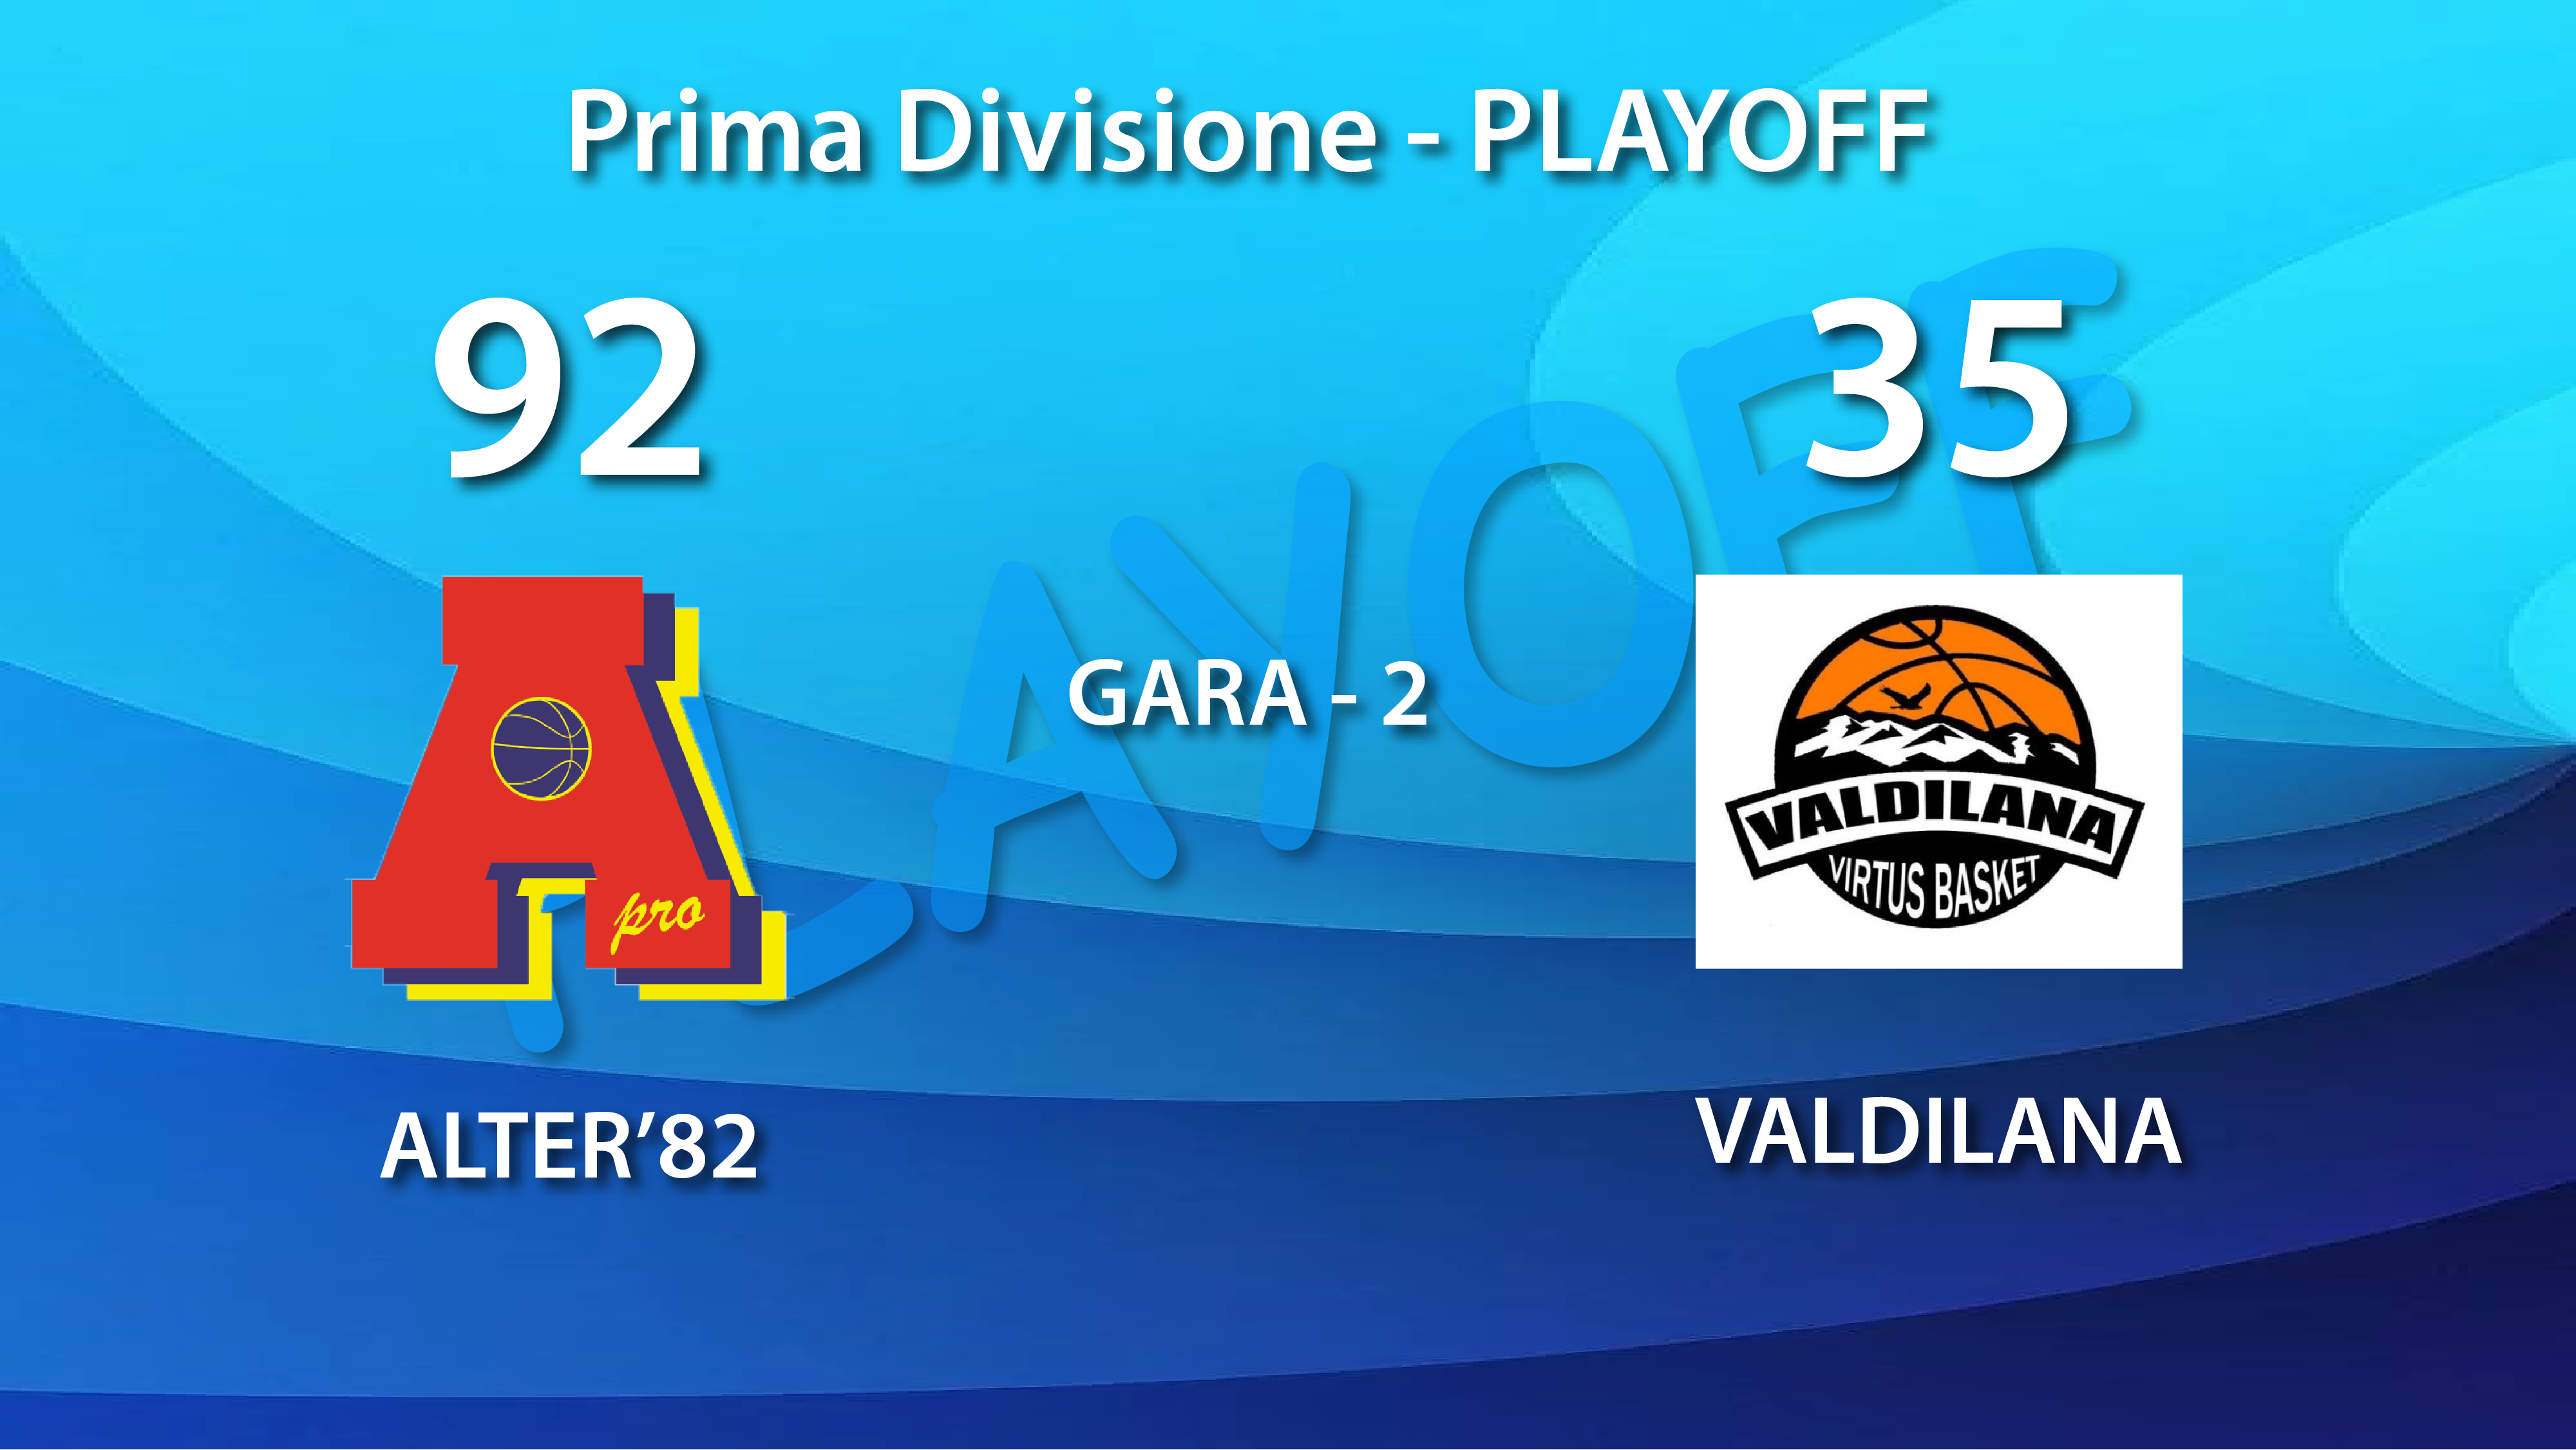 Prima Divisione quarti di finale: gara-2 passa il turno Alter’82 che vince con Valdilana